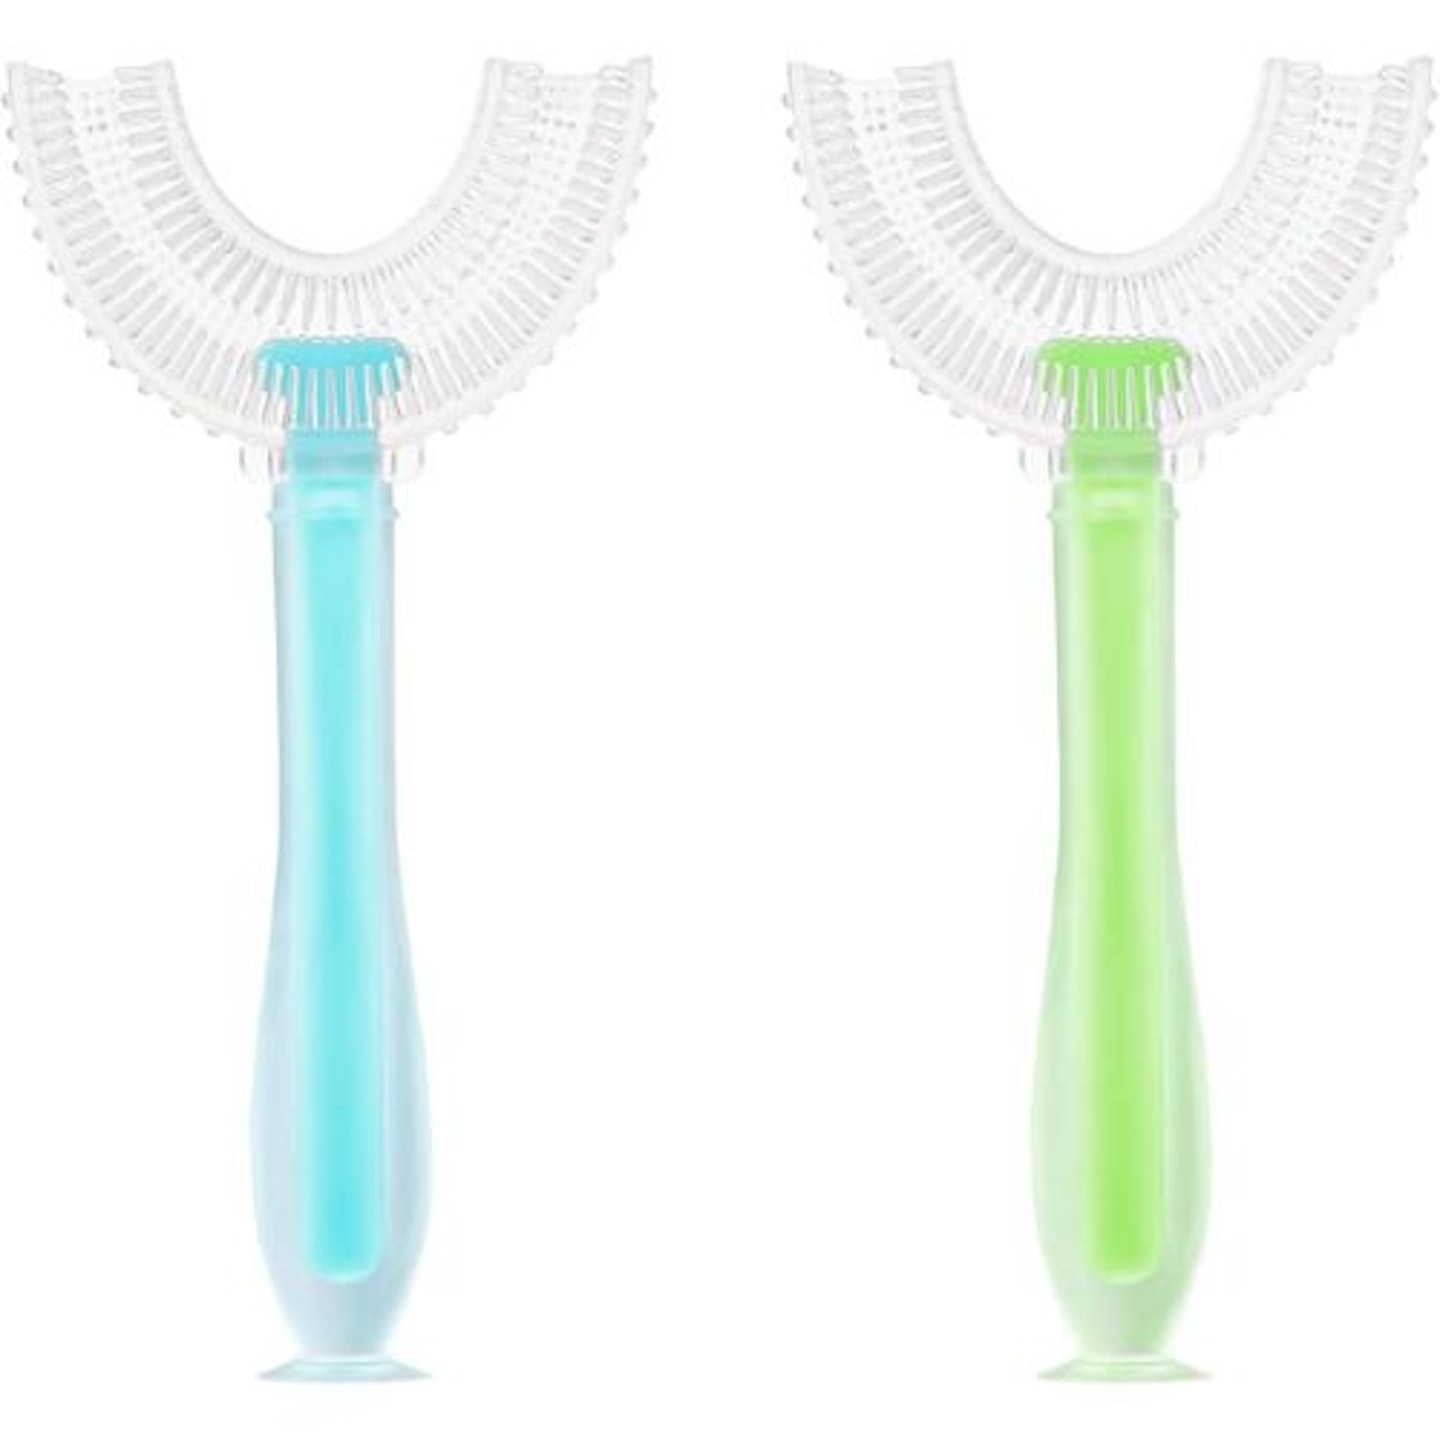 Best U-shaped toothbrush Vicloon U Shaped Toothbrush